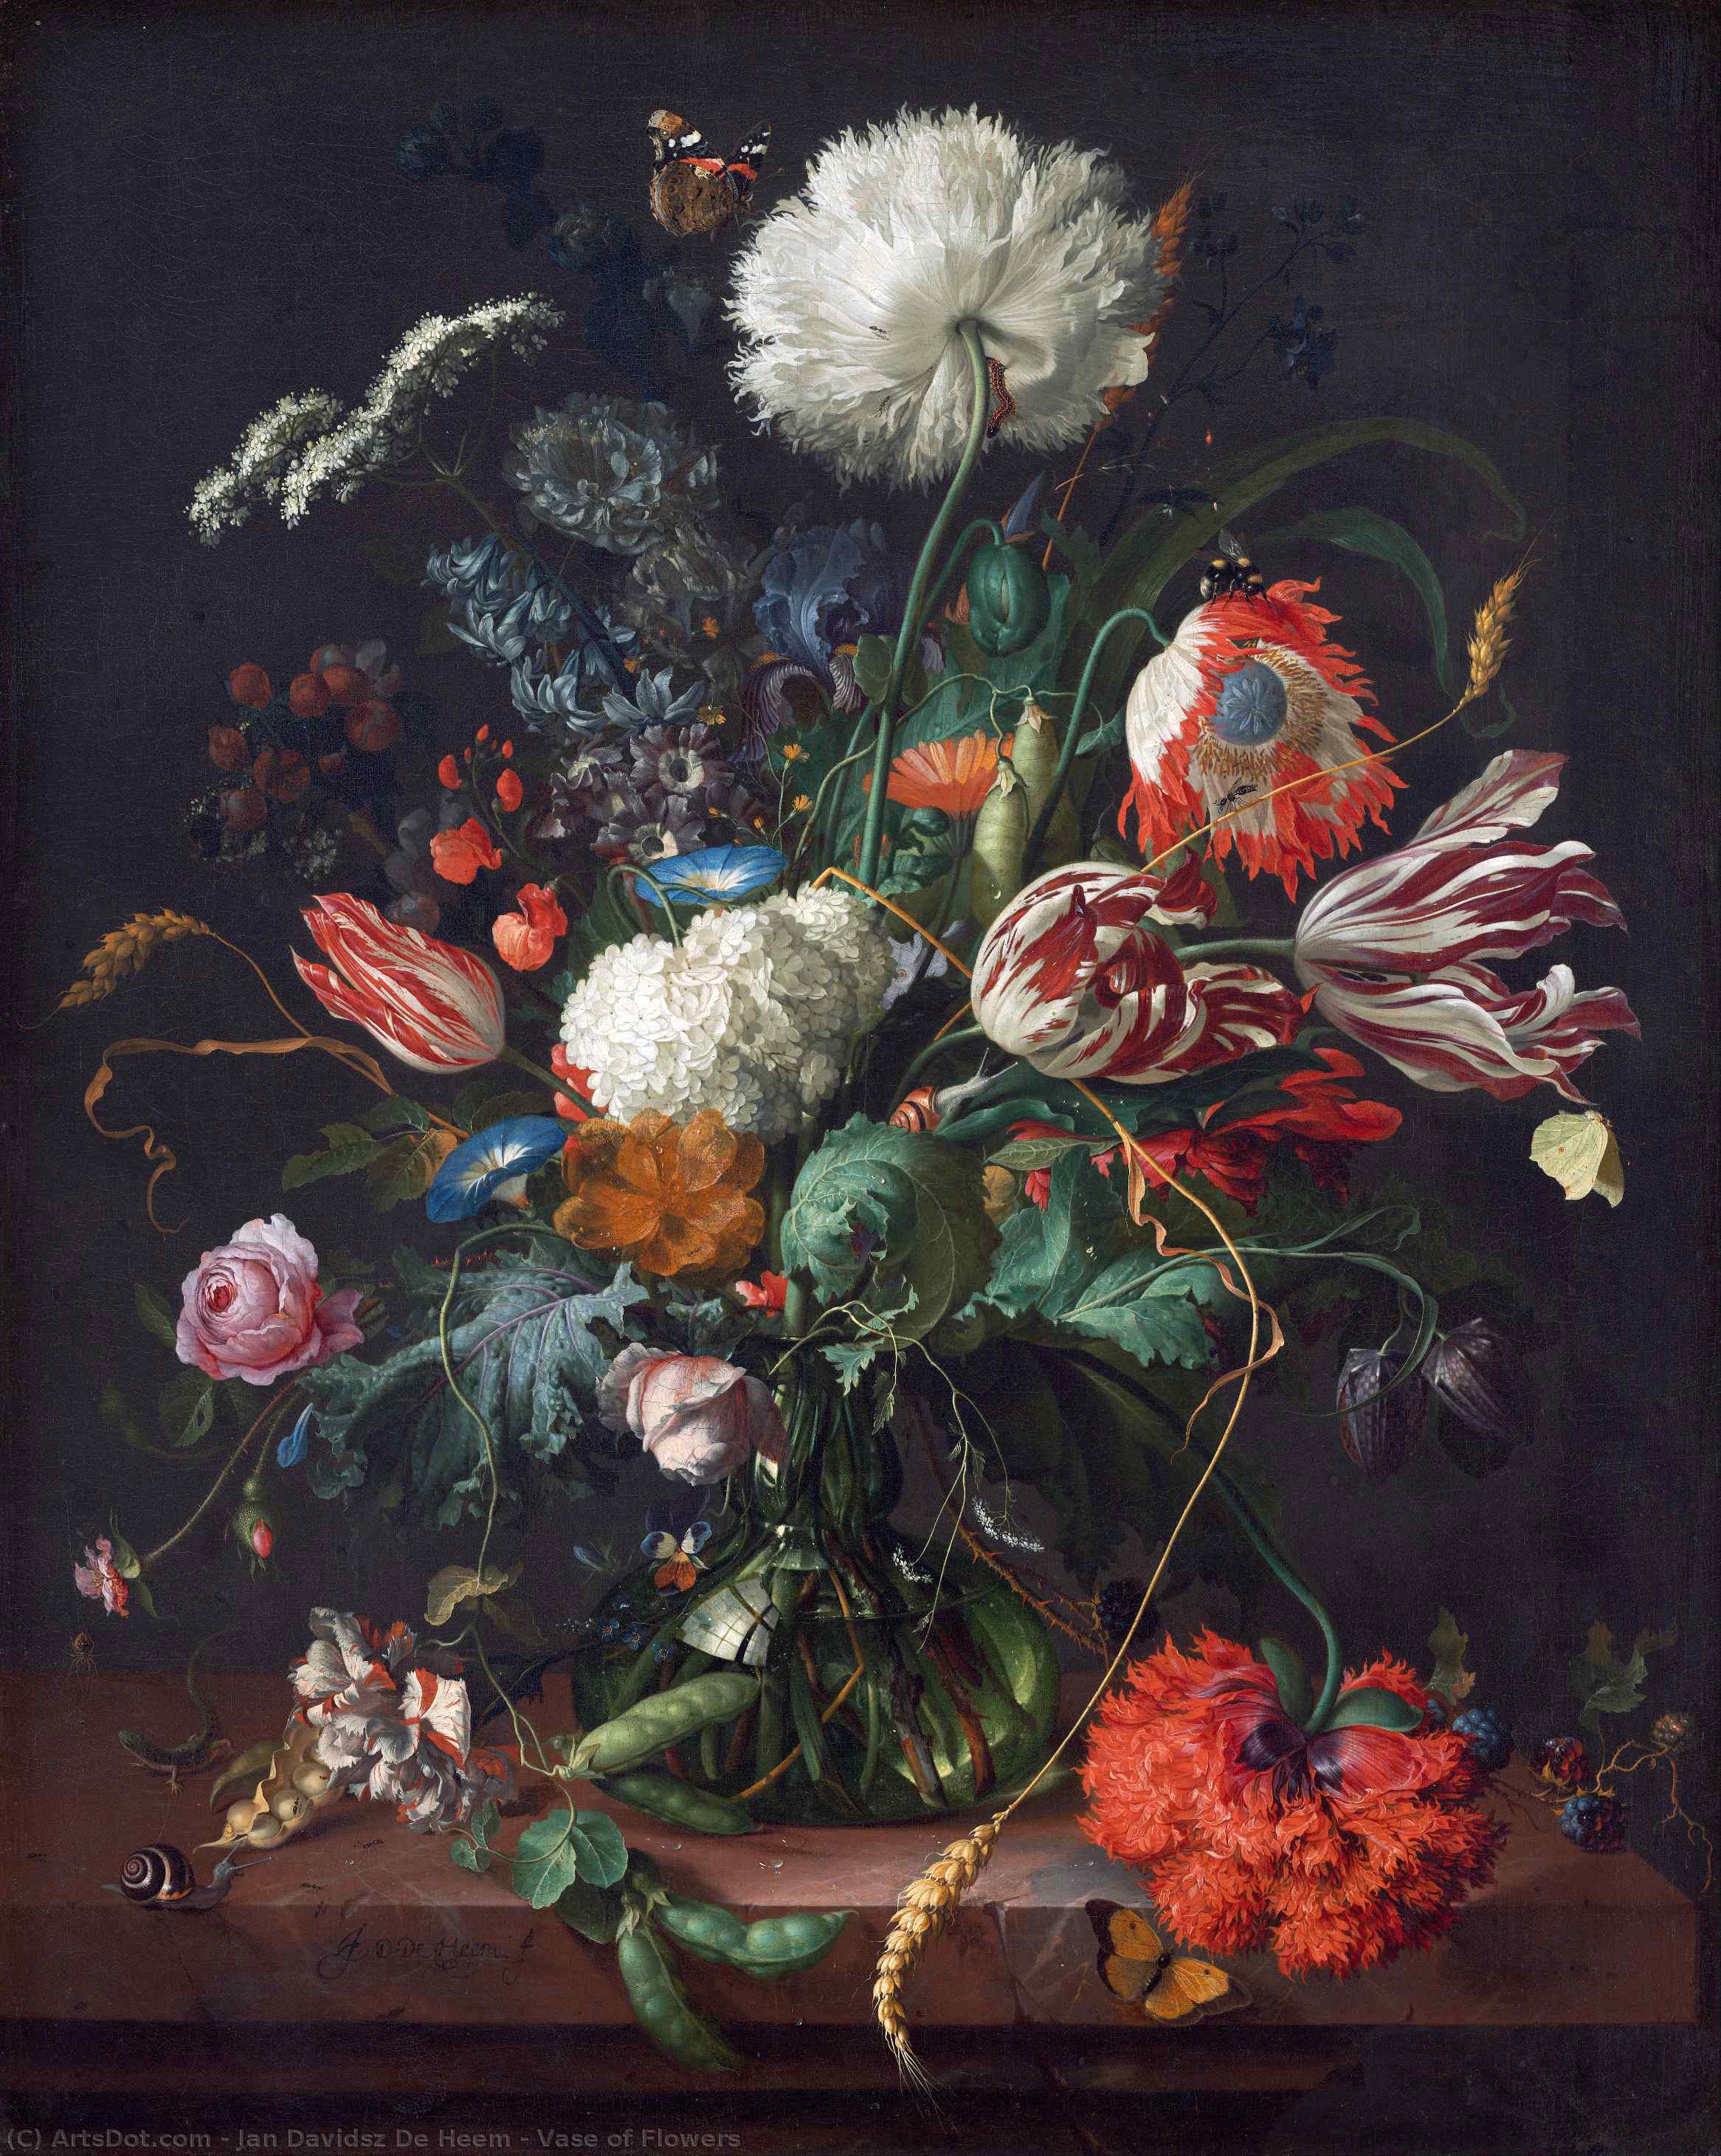 WikiOO.org - Encyclopedia of Fine Arts - Lukisan, Artwork Jan Davidsz De Heem - Vase of Flowers